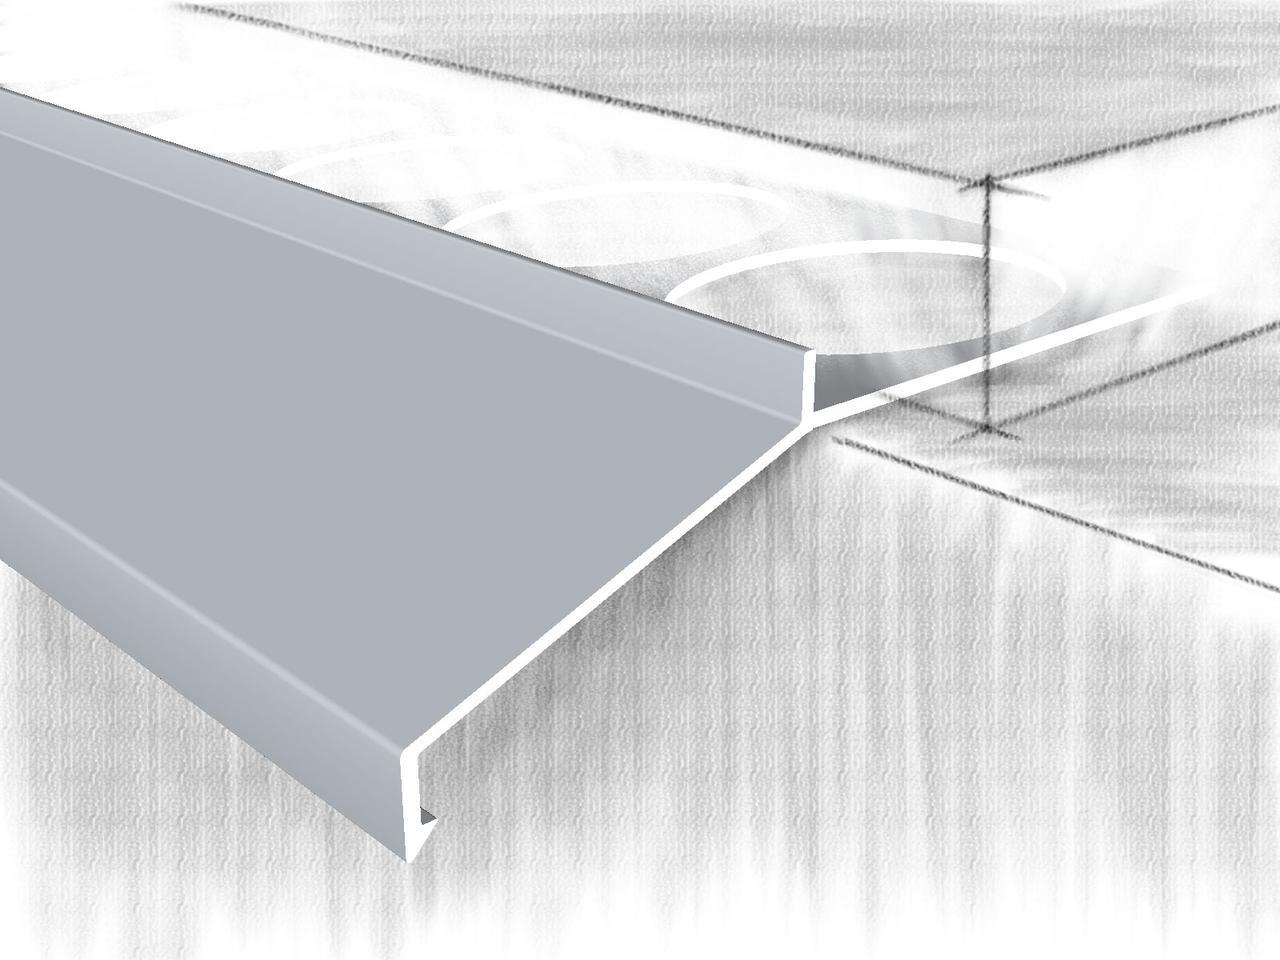 Отлив для балконов и открытых терас. 259-01 анодированный серебро 250 см, фото 1